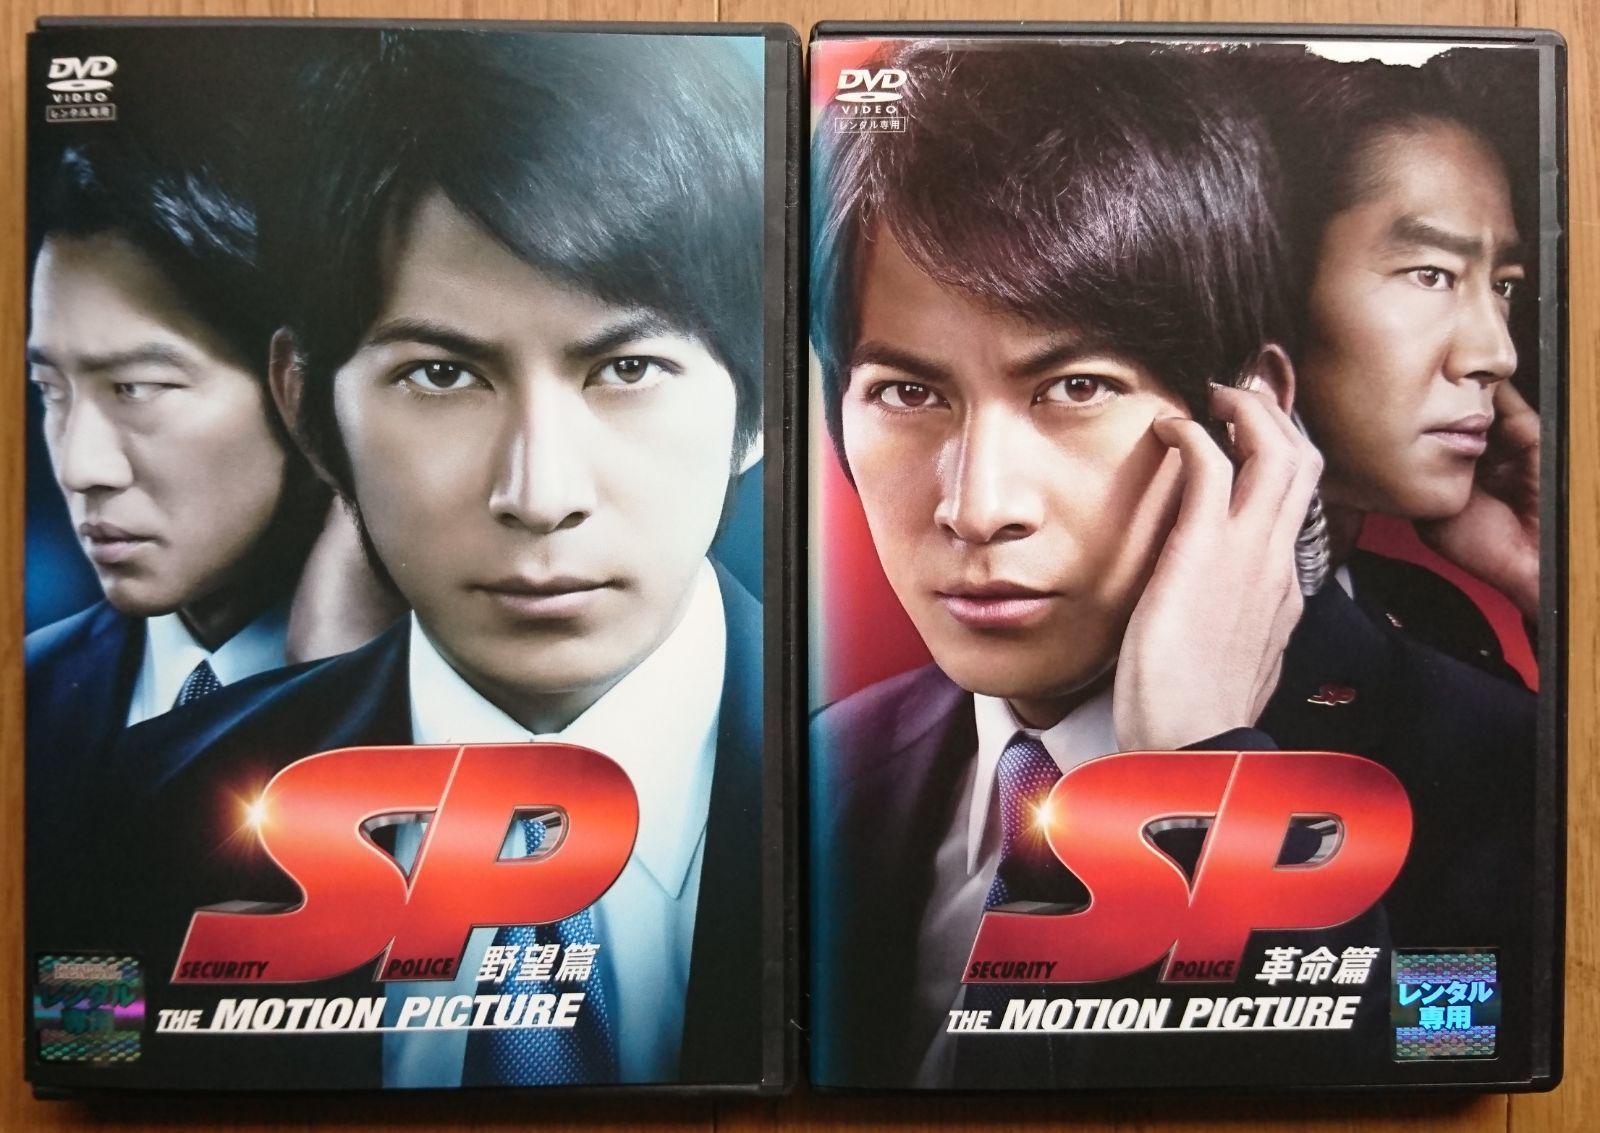 DVD SP 革命篇 特別版 - DVD